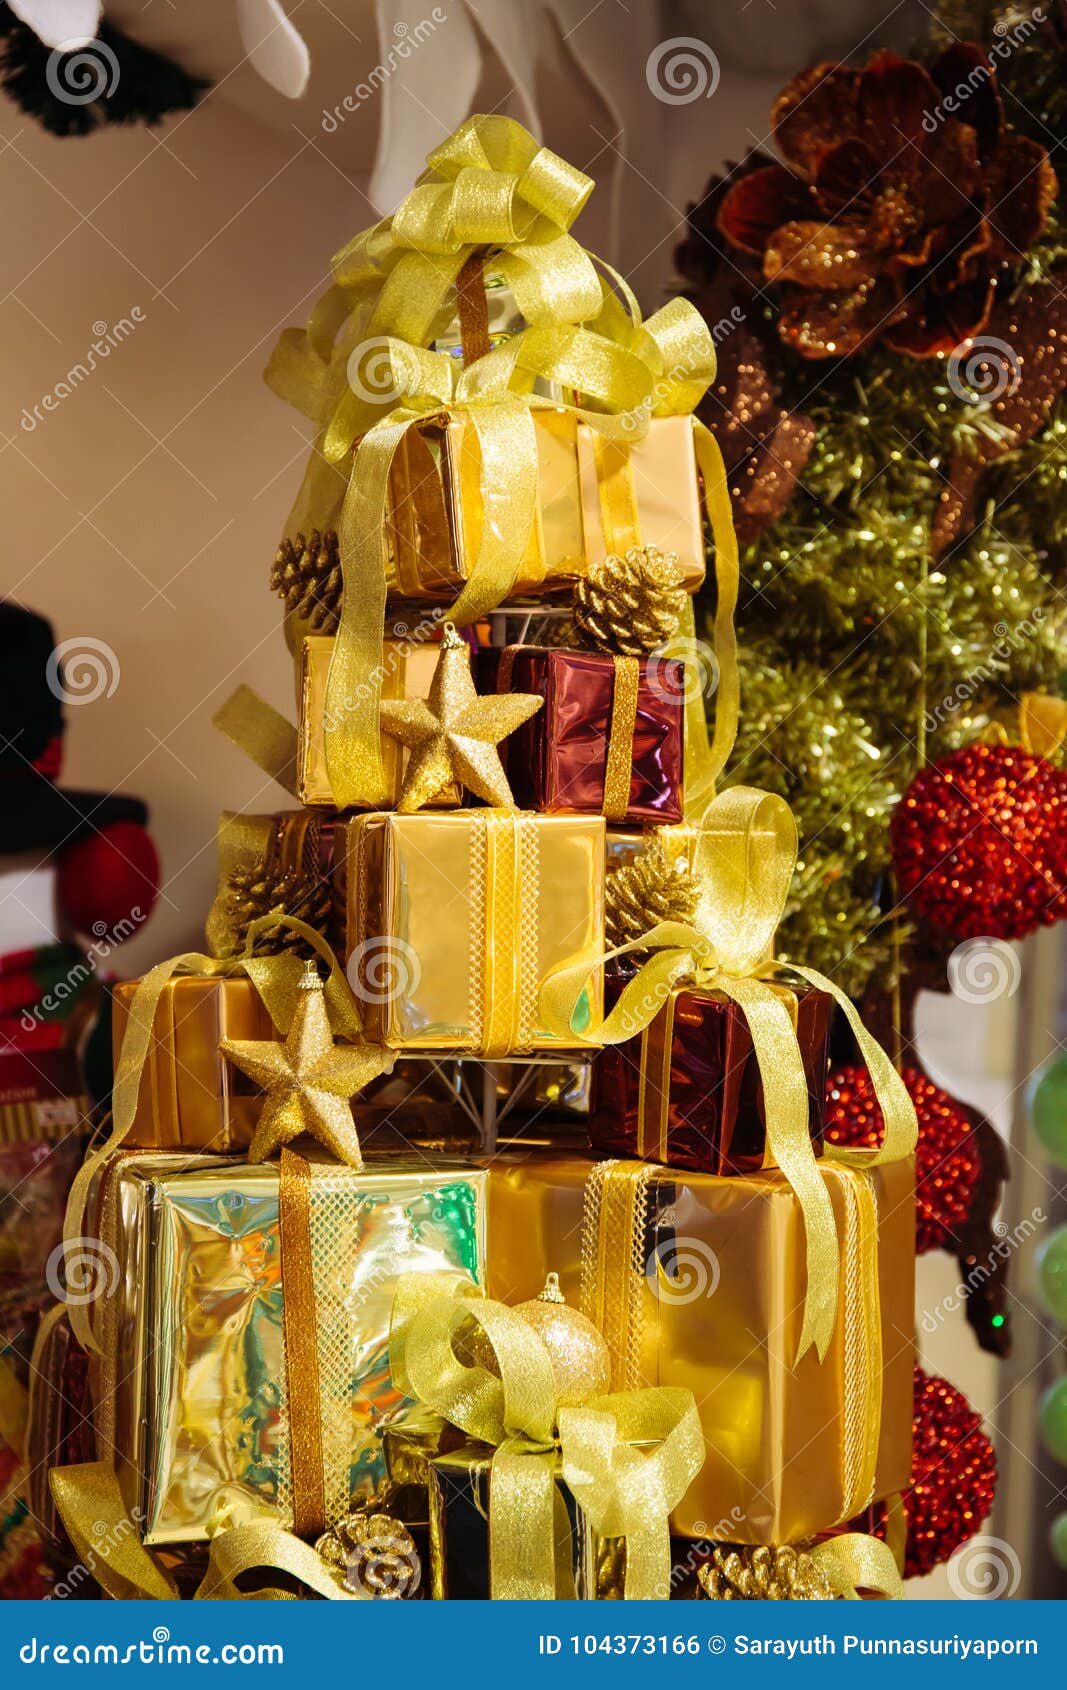 Pila De Cajas De Regalo Brillantes Adornadas En árbol De Navidad Con Las  Decoraciones Del Ornamento De La Navidad Foto de archivo - Imagen de fondo,  navidad: 104373166